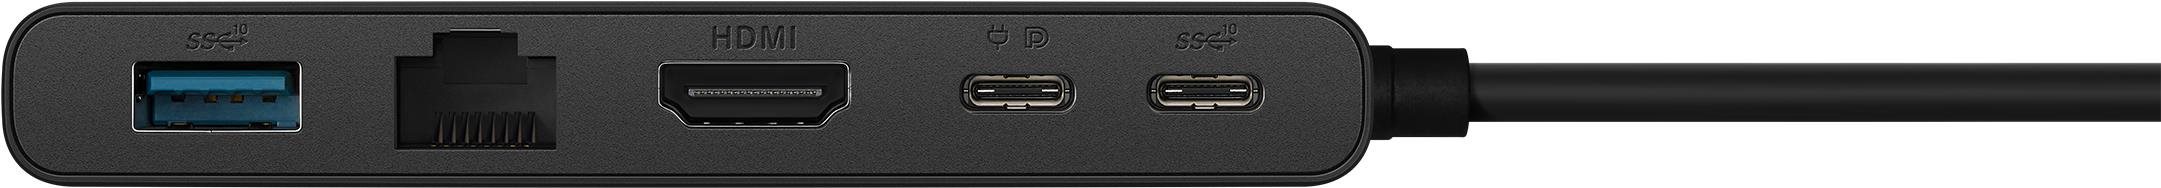 Dockingstation ASUS DC201 Dual 4K USB-C Dock ...